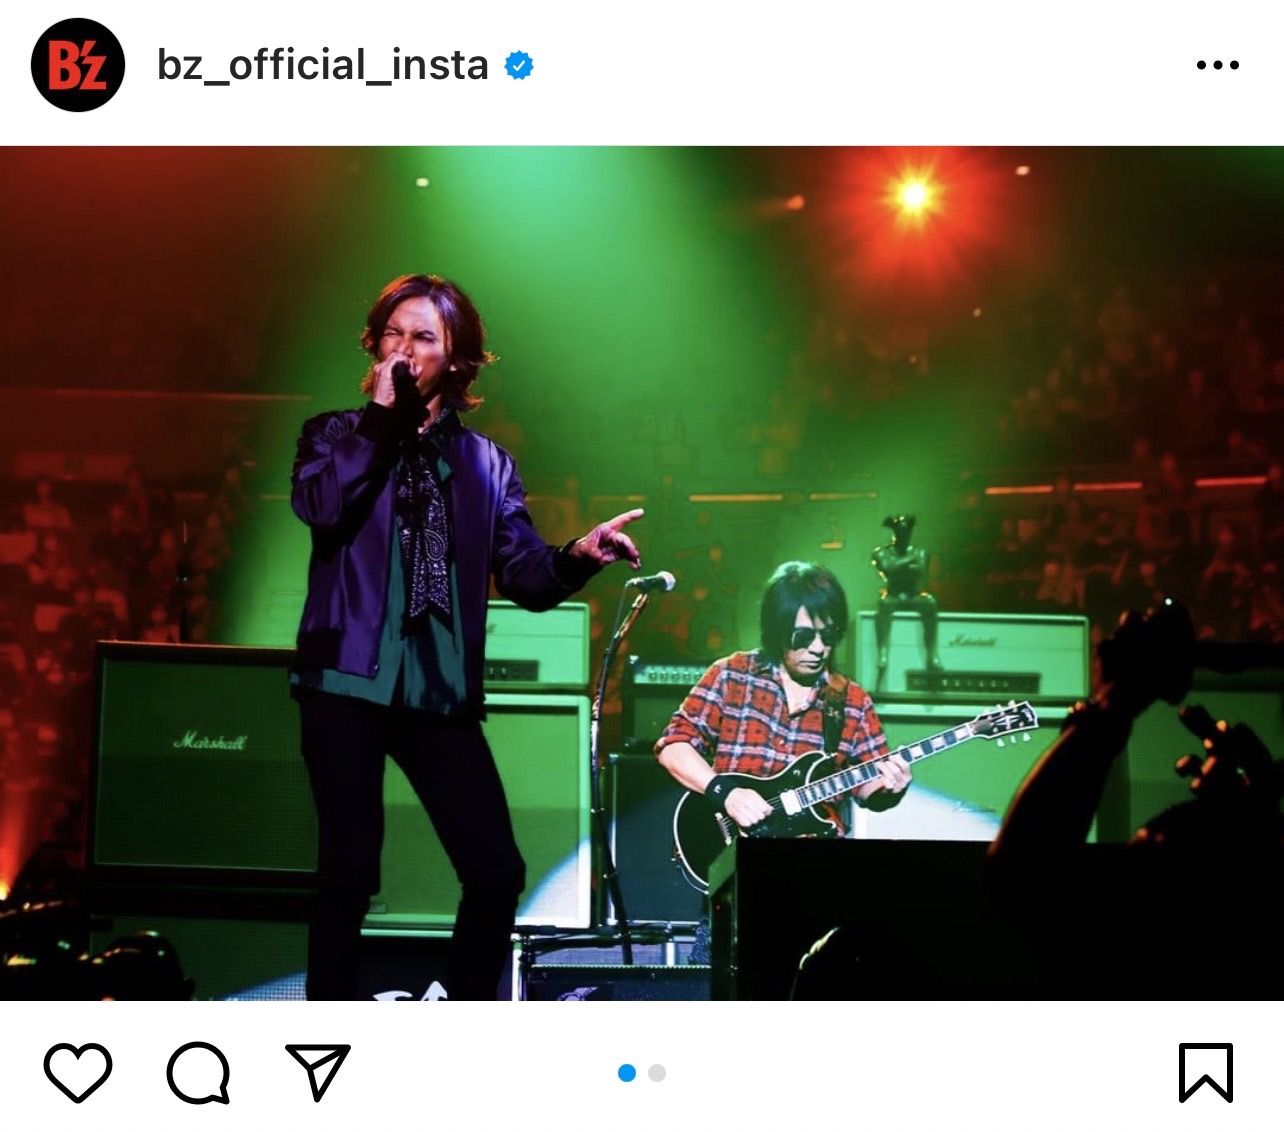 B'z公式Instagramに投稿された『B'z presents UNITE #01』大阪公演のステージ写真